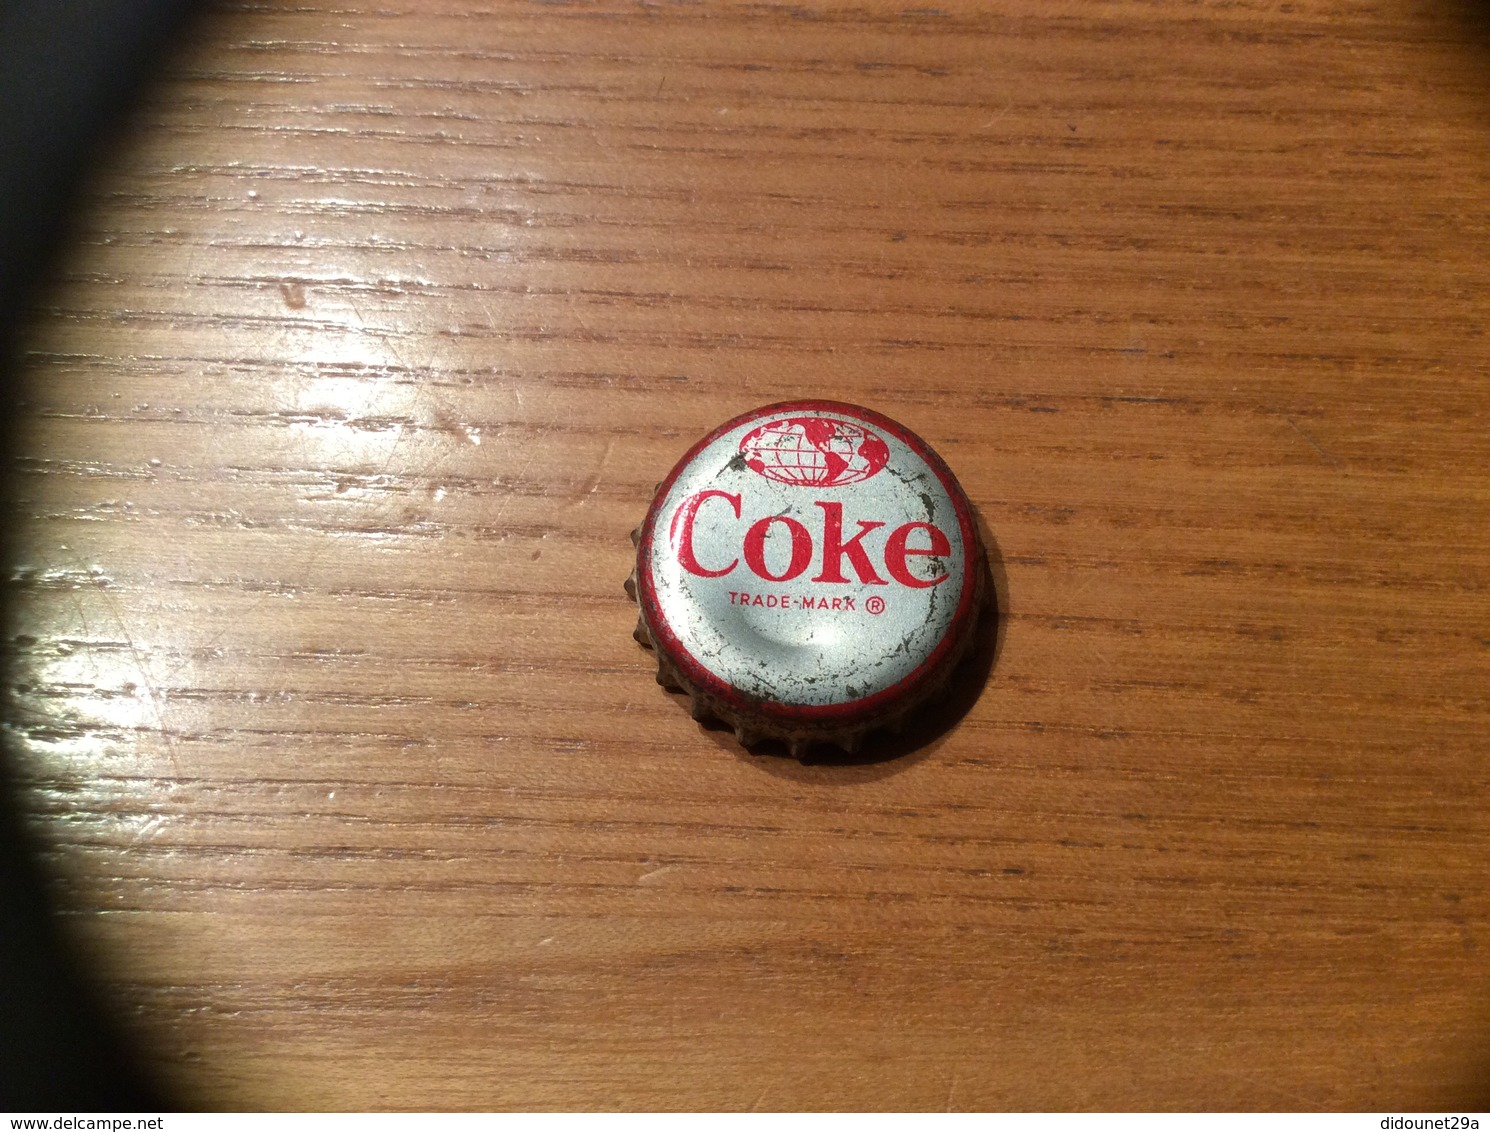 Ancienne Capsule "Coke N°11-BERMUDA-HORSE DRAWN CAB"Etats-Unis (USA) Coca-Cola, Série Pays (Liège Enlevé) - Soda